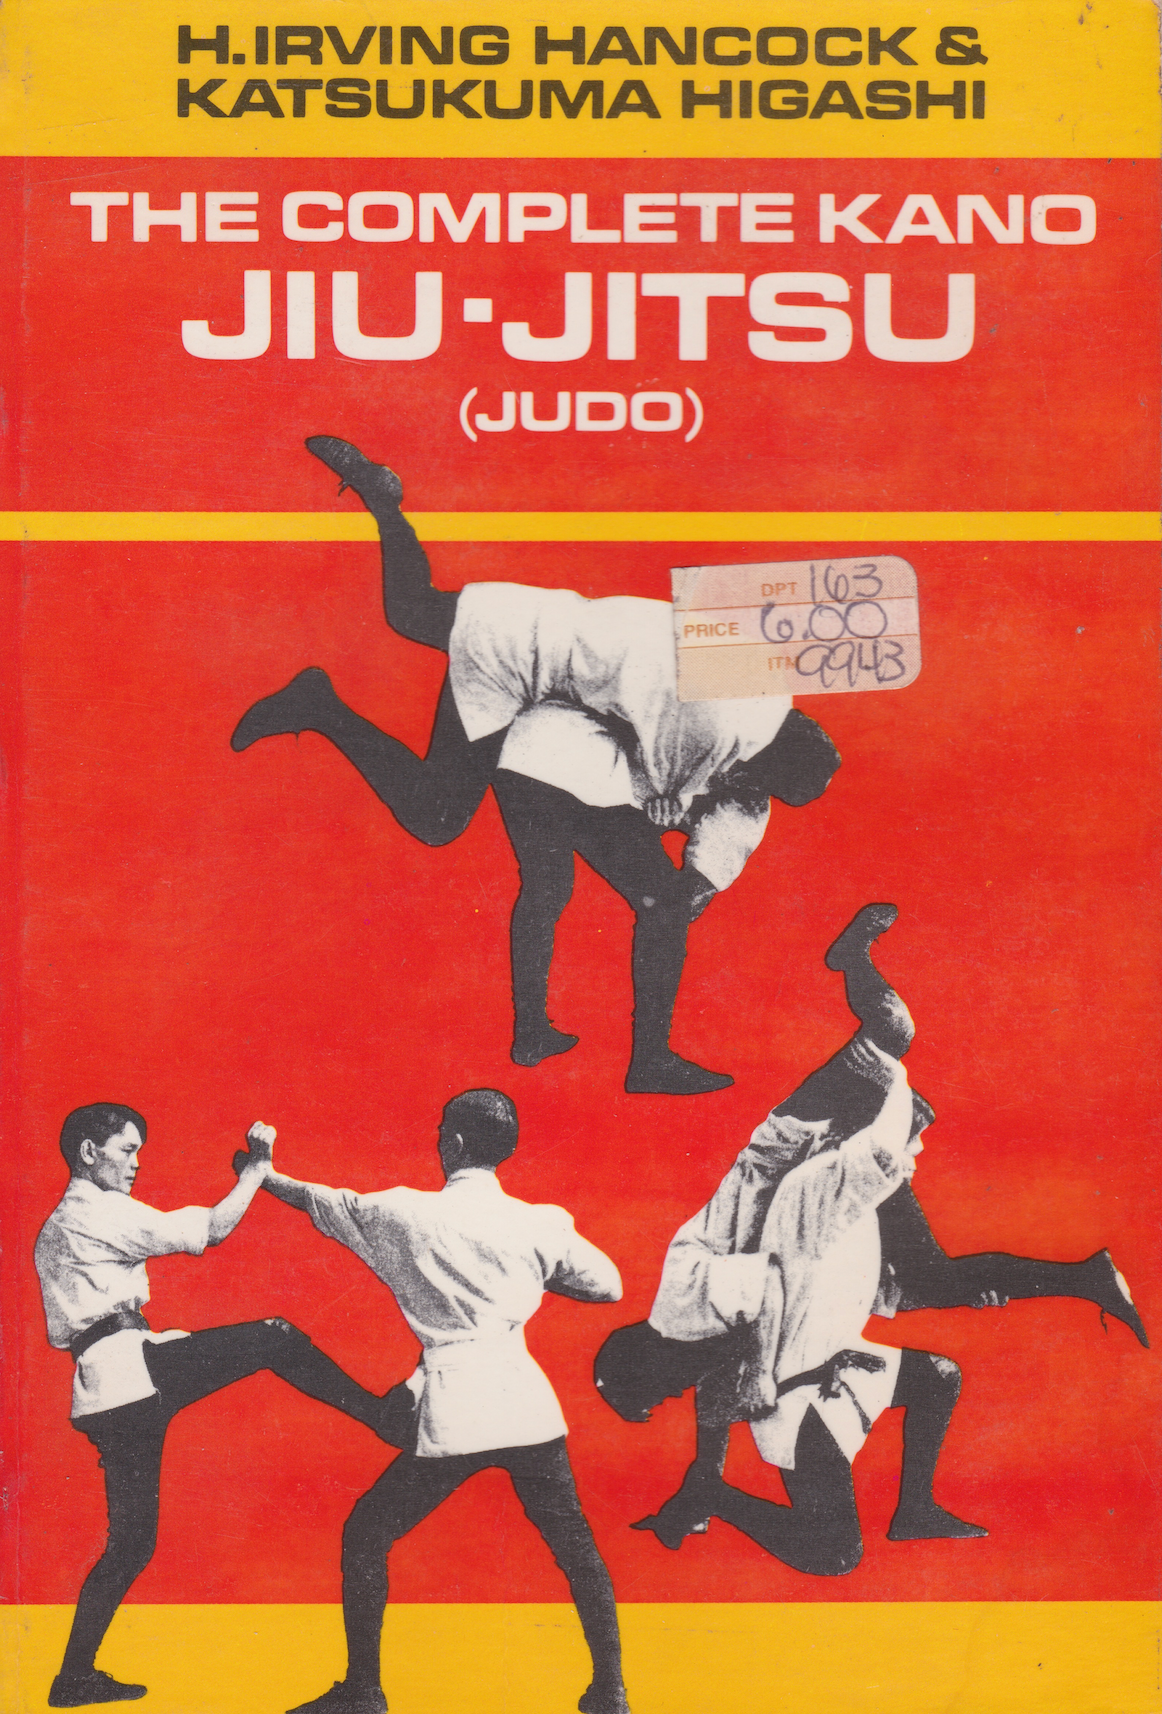 The Complete Kano Jiu-Jitsu (Judo) Book by H Irving Hancock & Katsukuma Higashi (Preowned)